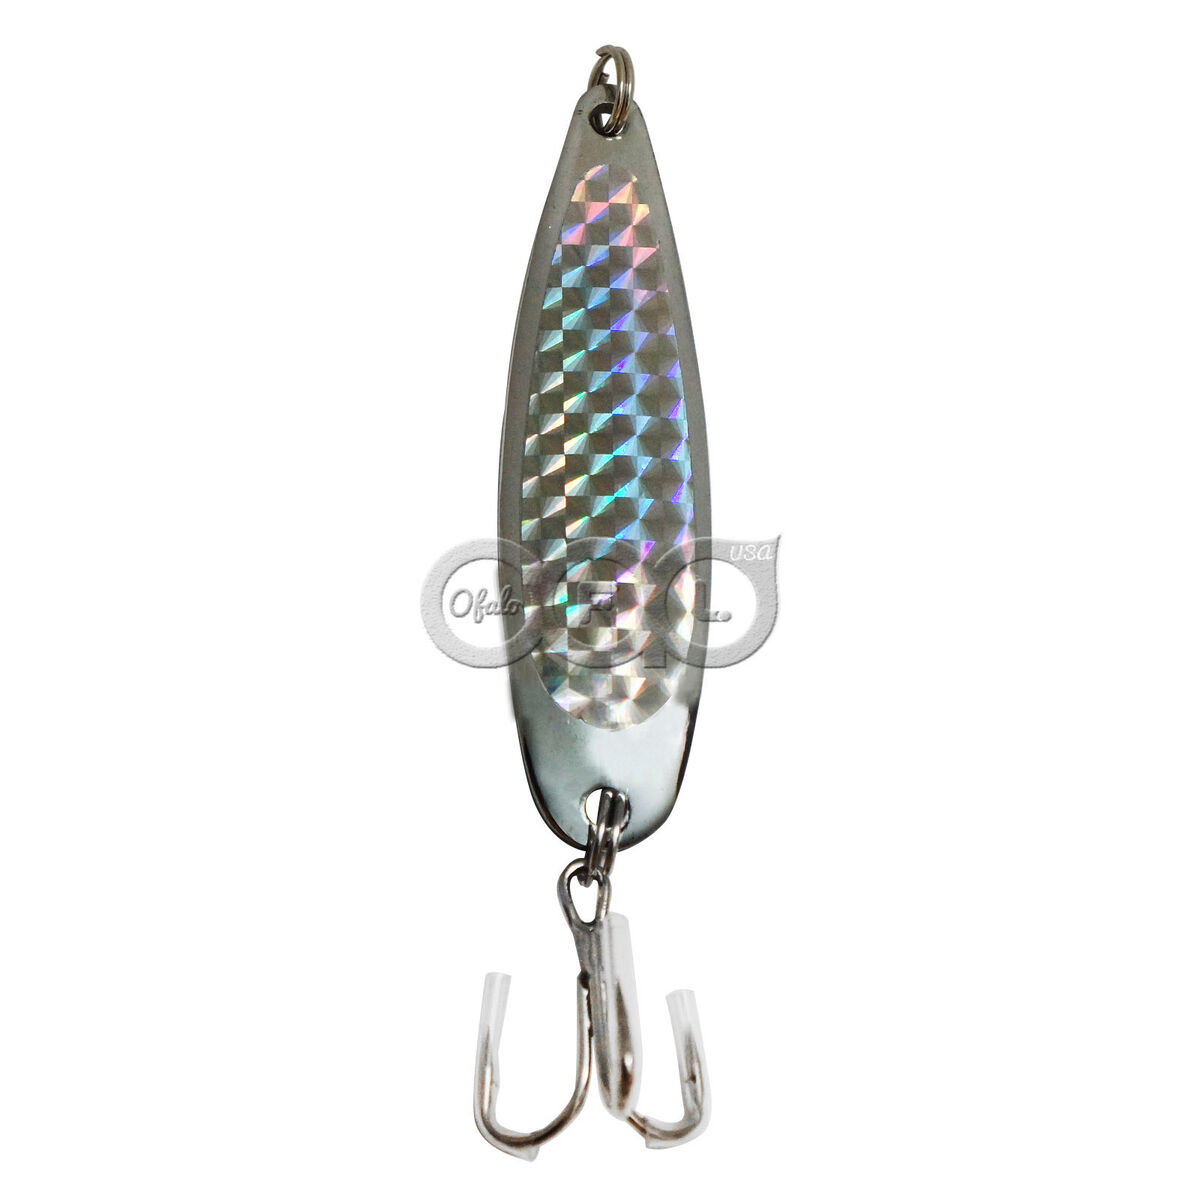 Fishing Spoons Silver Chrome Fish Jigs Casting Lures 1oz 2oz 3oz 5oz 7oz  9oz lot